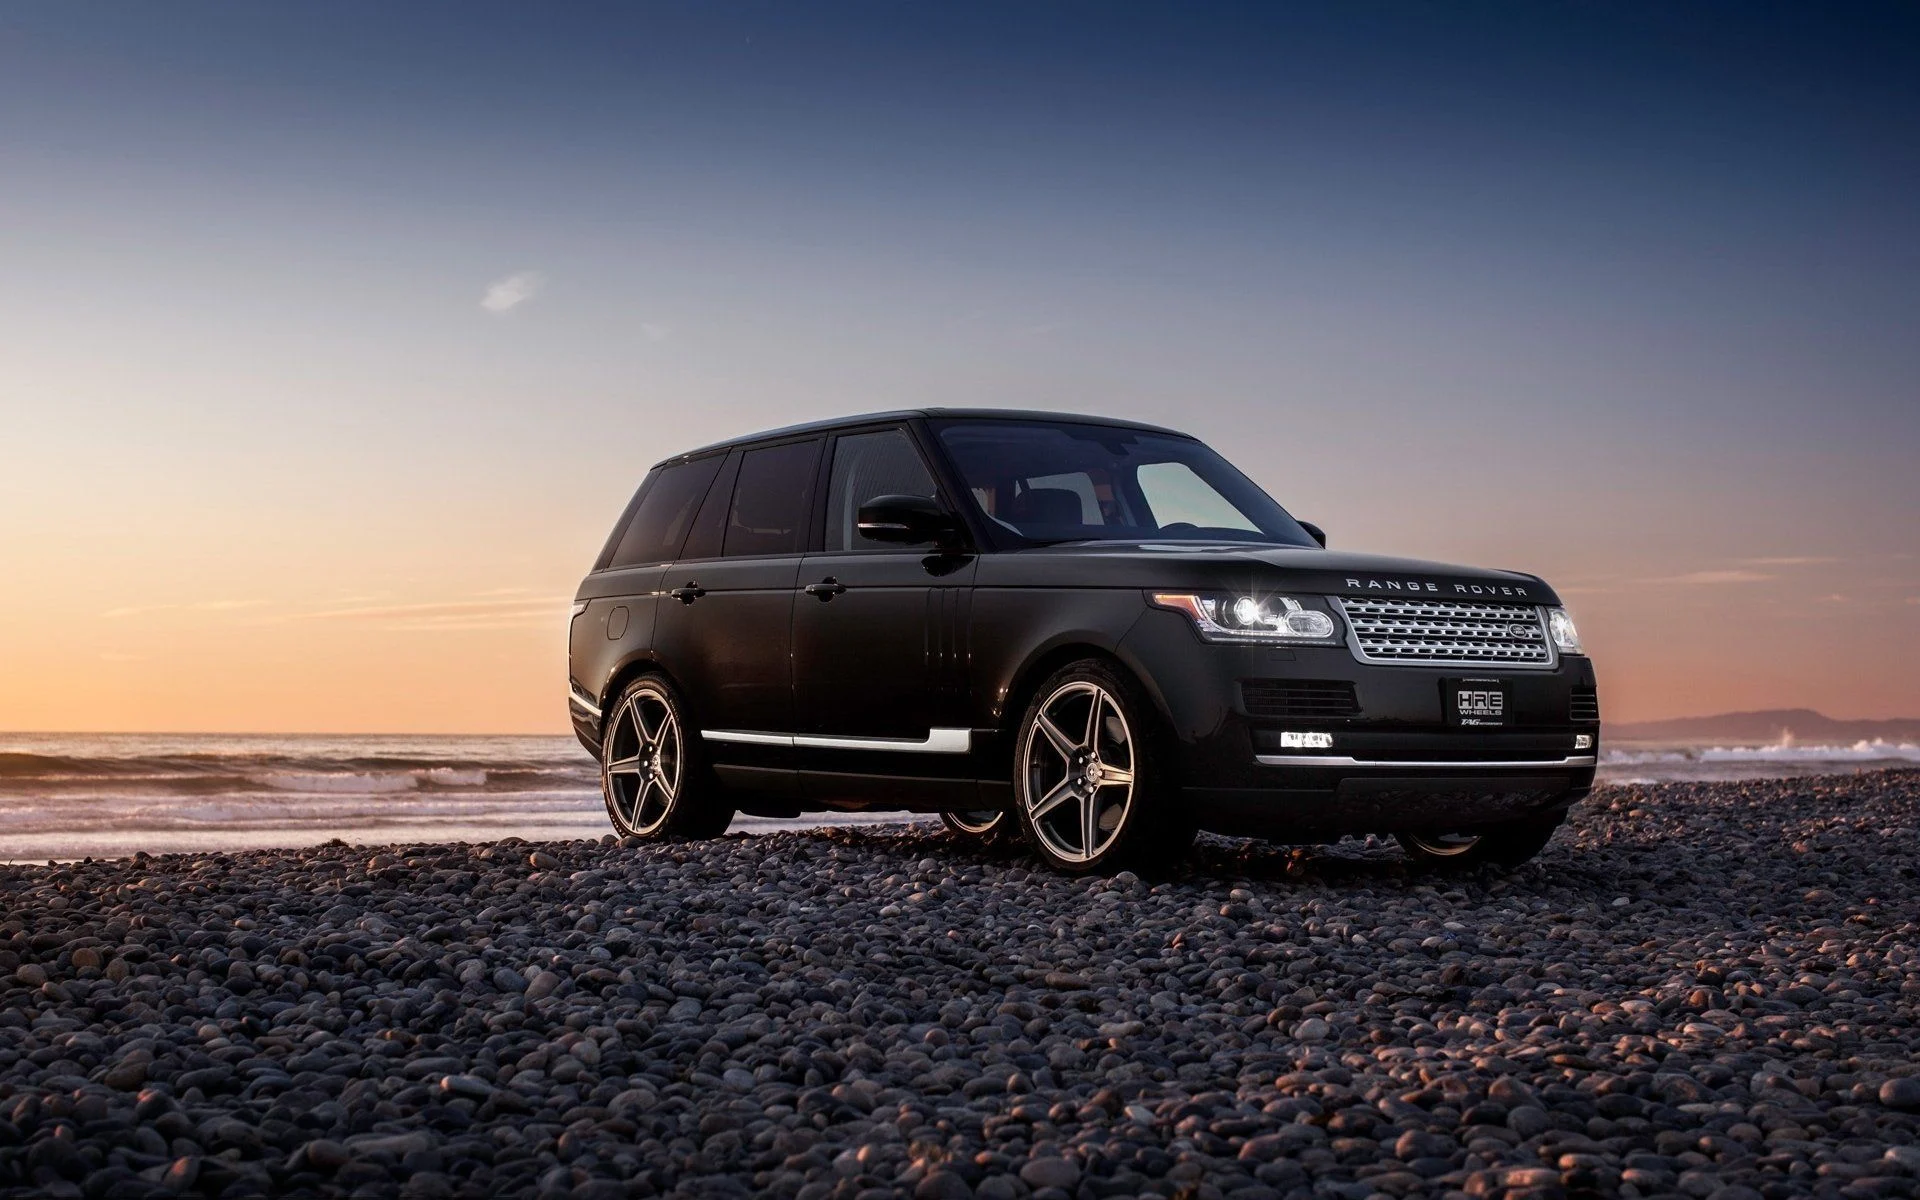 Cum găsești rapid și eficient piese pentru mașina ta  Range Rover sau alte modele de mașini de teren?